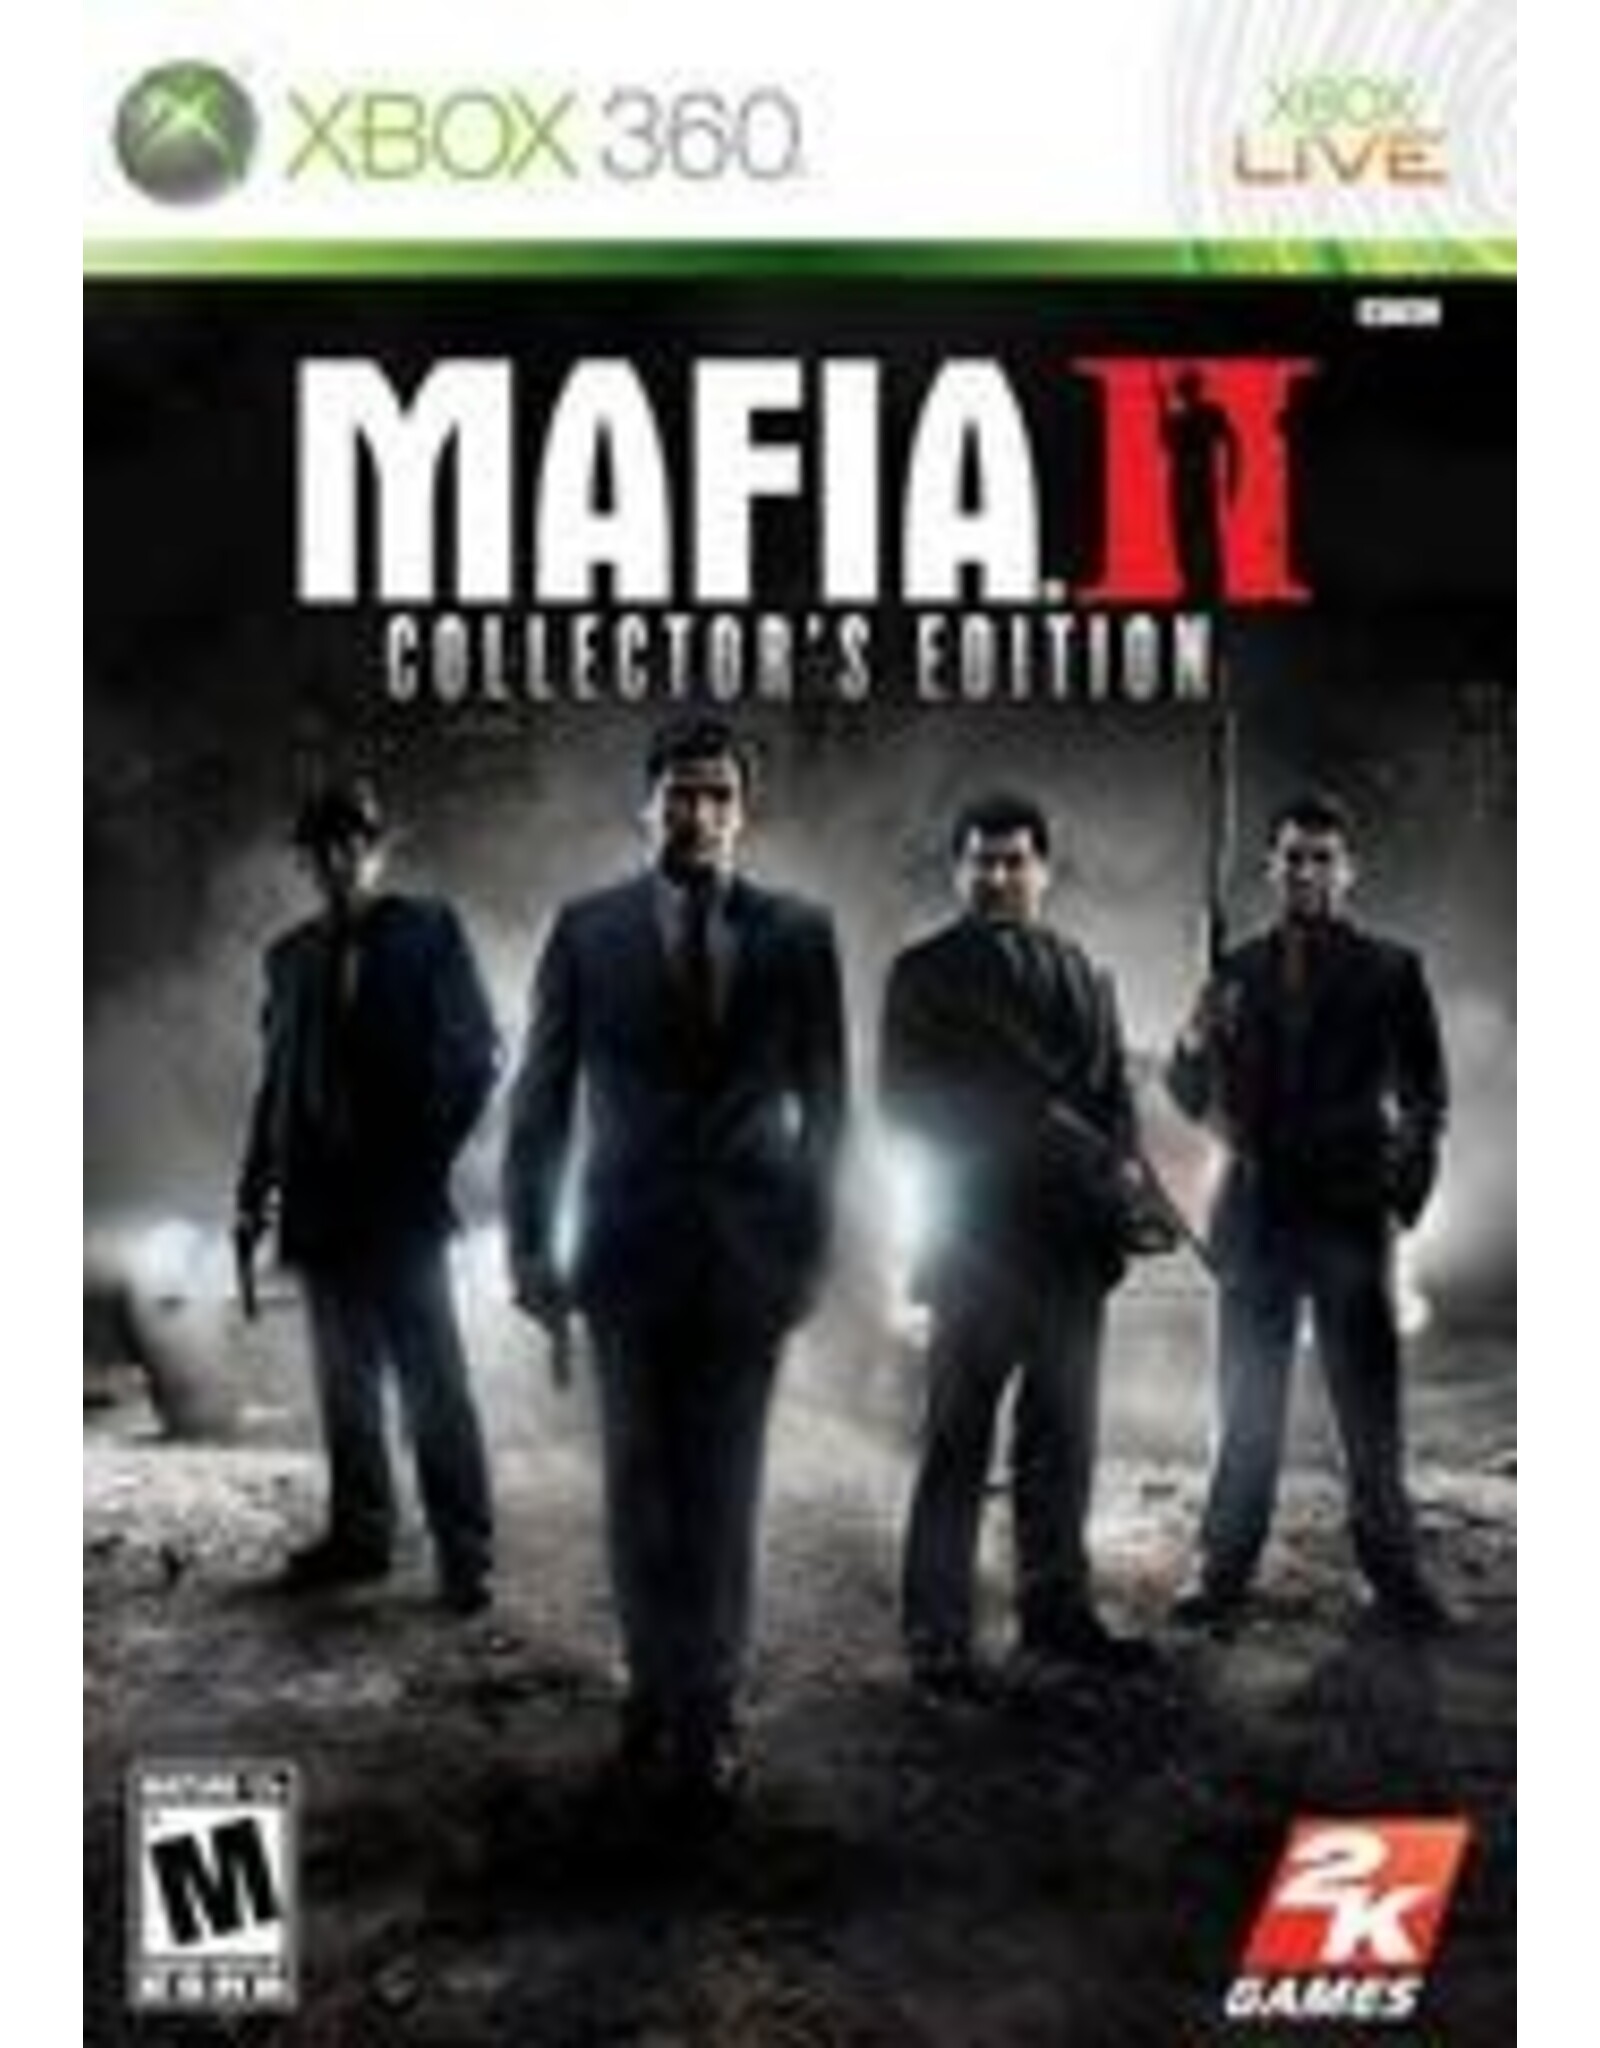 Xbox 360 Mafia II Collector's Edition (Used)